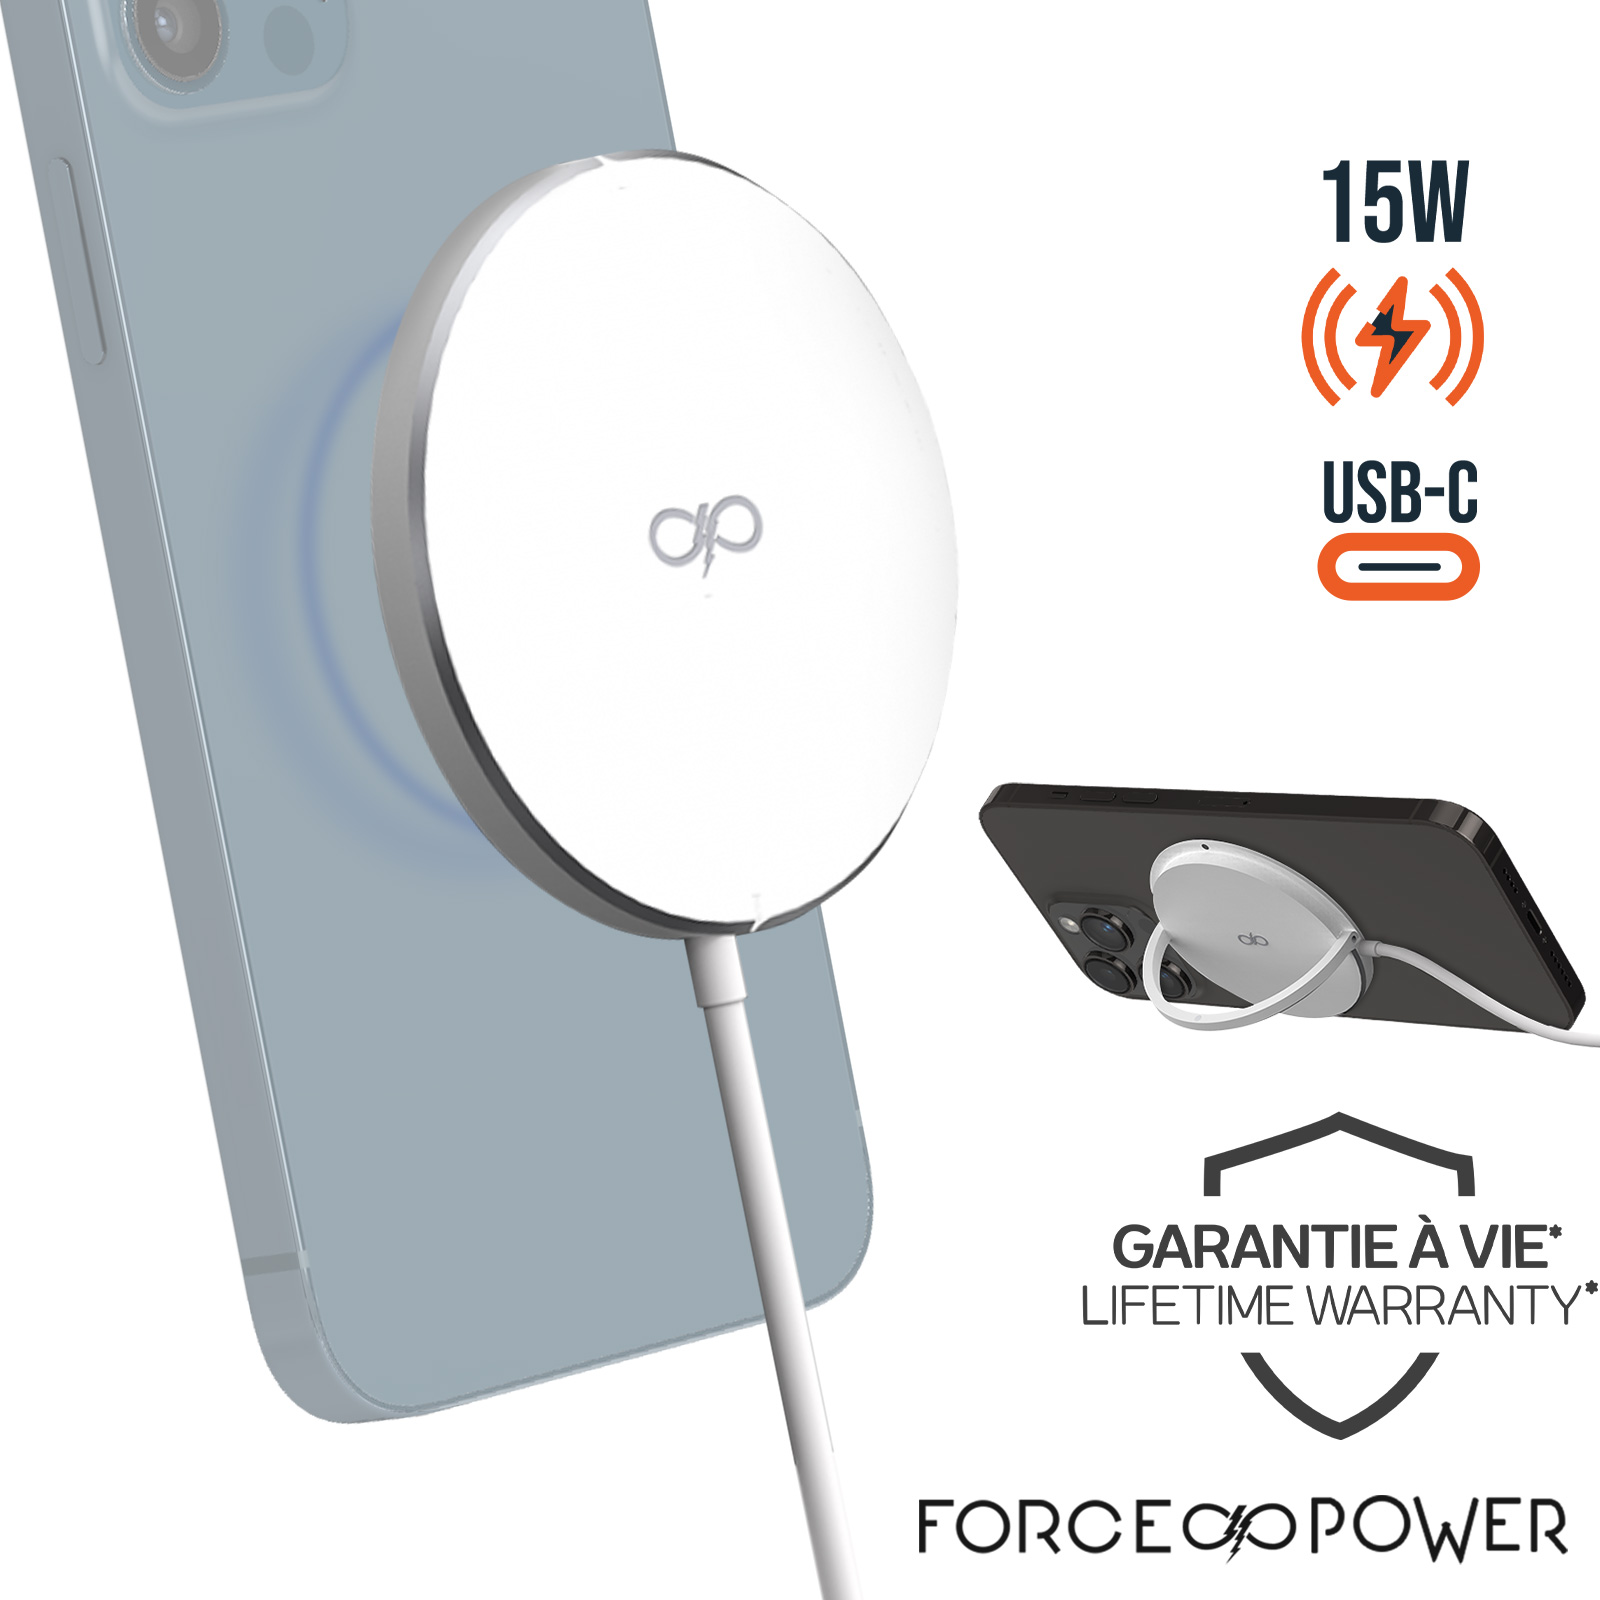 Chargeur MagSafe Force Power pour iPhone, Garantie à Vie - Puissance 15W  avec Fonction Stand, Force Power - Blanc - Français